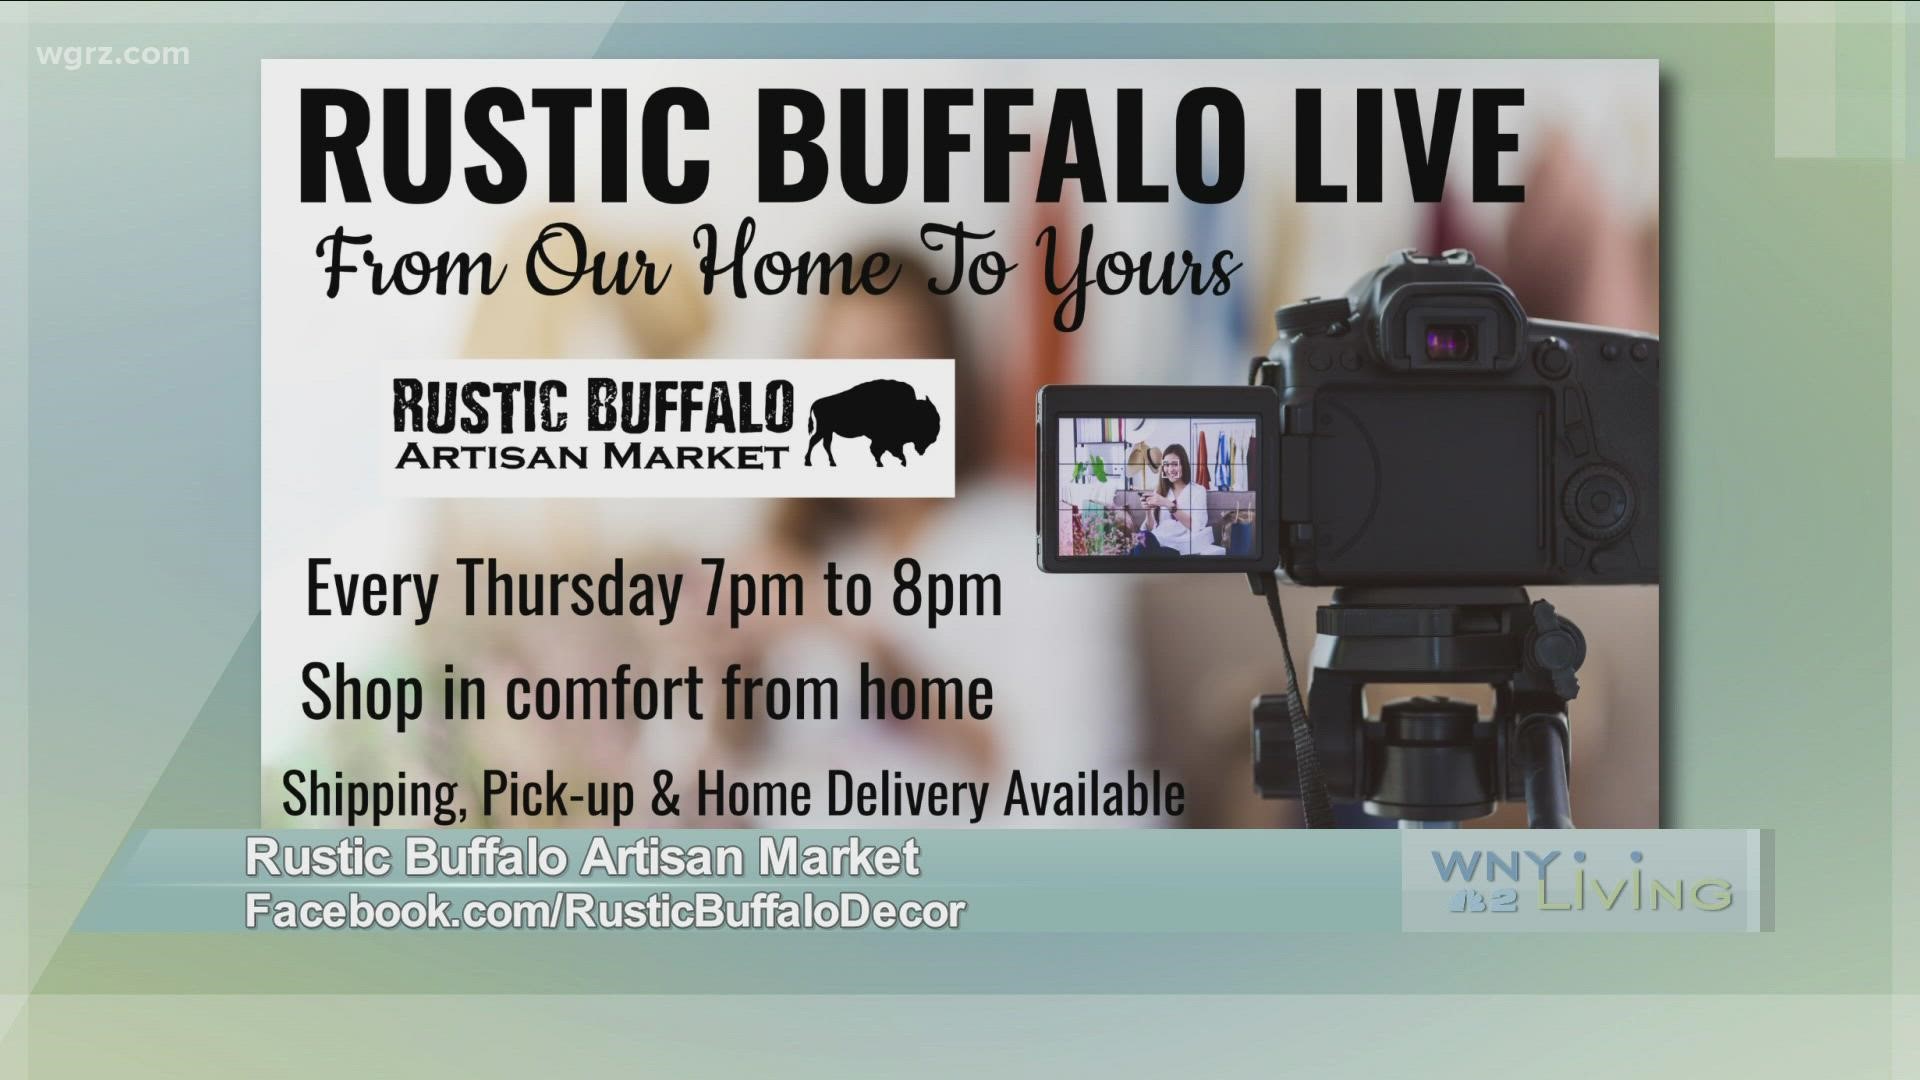 WNY Living - January 15 - Rustic Buffalo Artisan Market (THIS VIDEO IS SPONSORED BY RUSTIC BUFFALO ARTISAN MARKET)